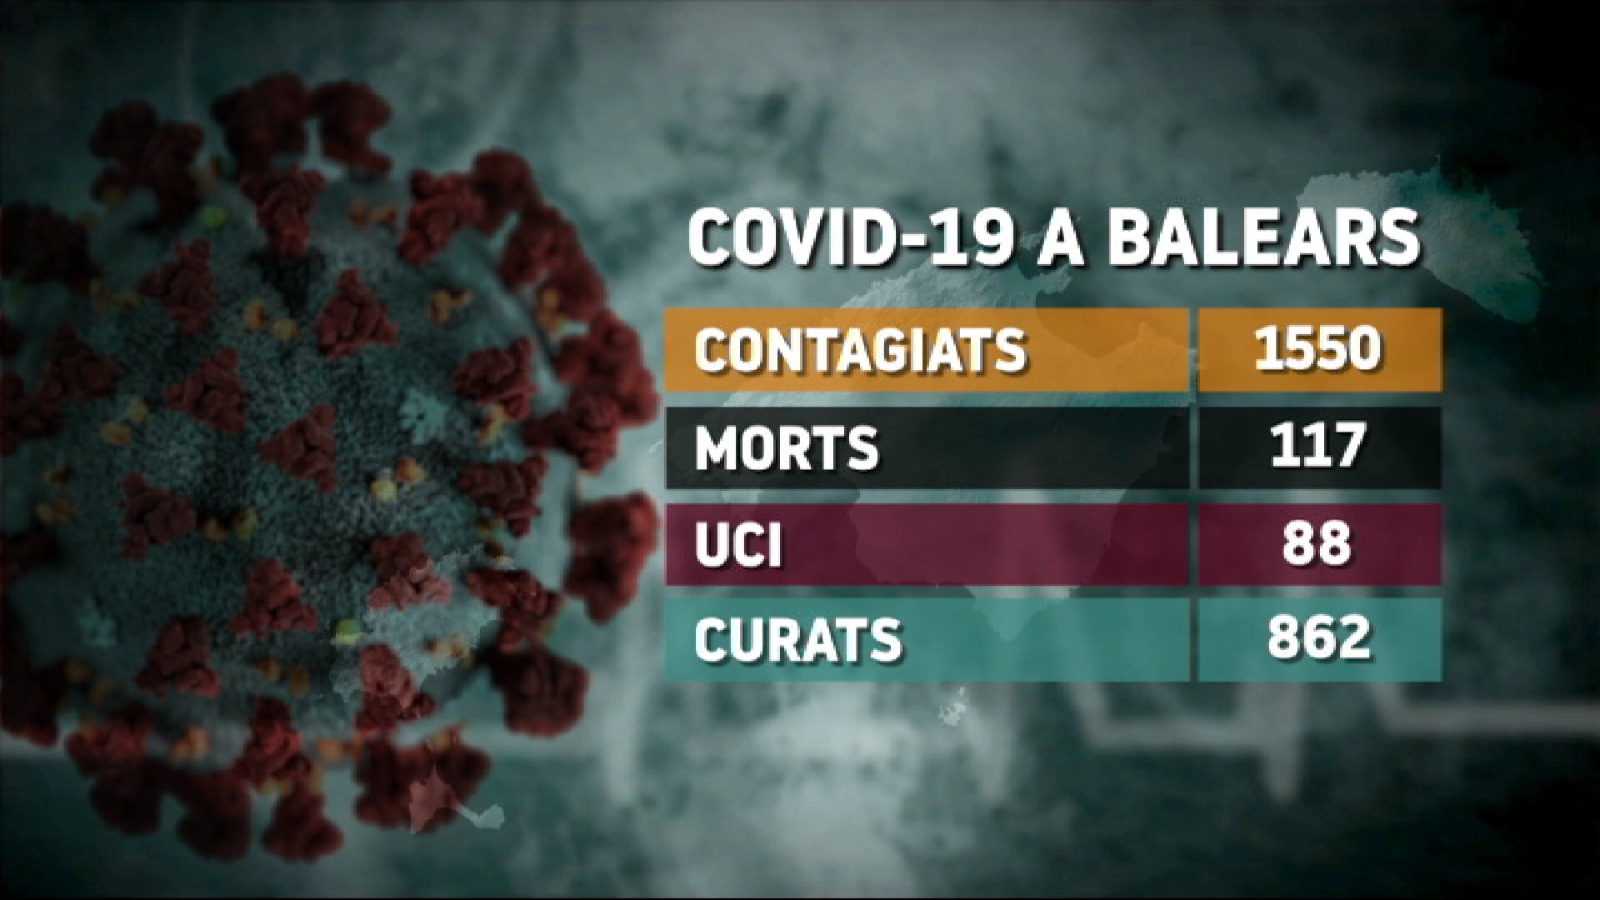 Moren+cinc+persones+m%C3%A9s+amb+coronavirus+a+les+Illes+en+les+darreres+24+hores